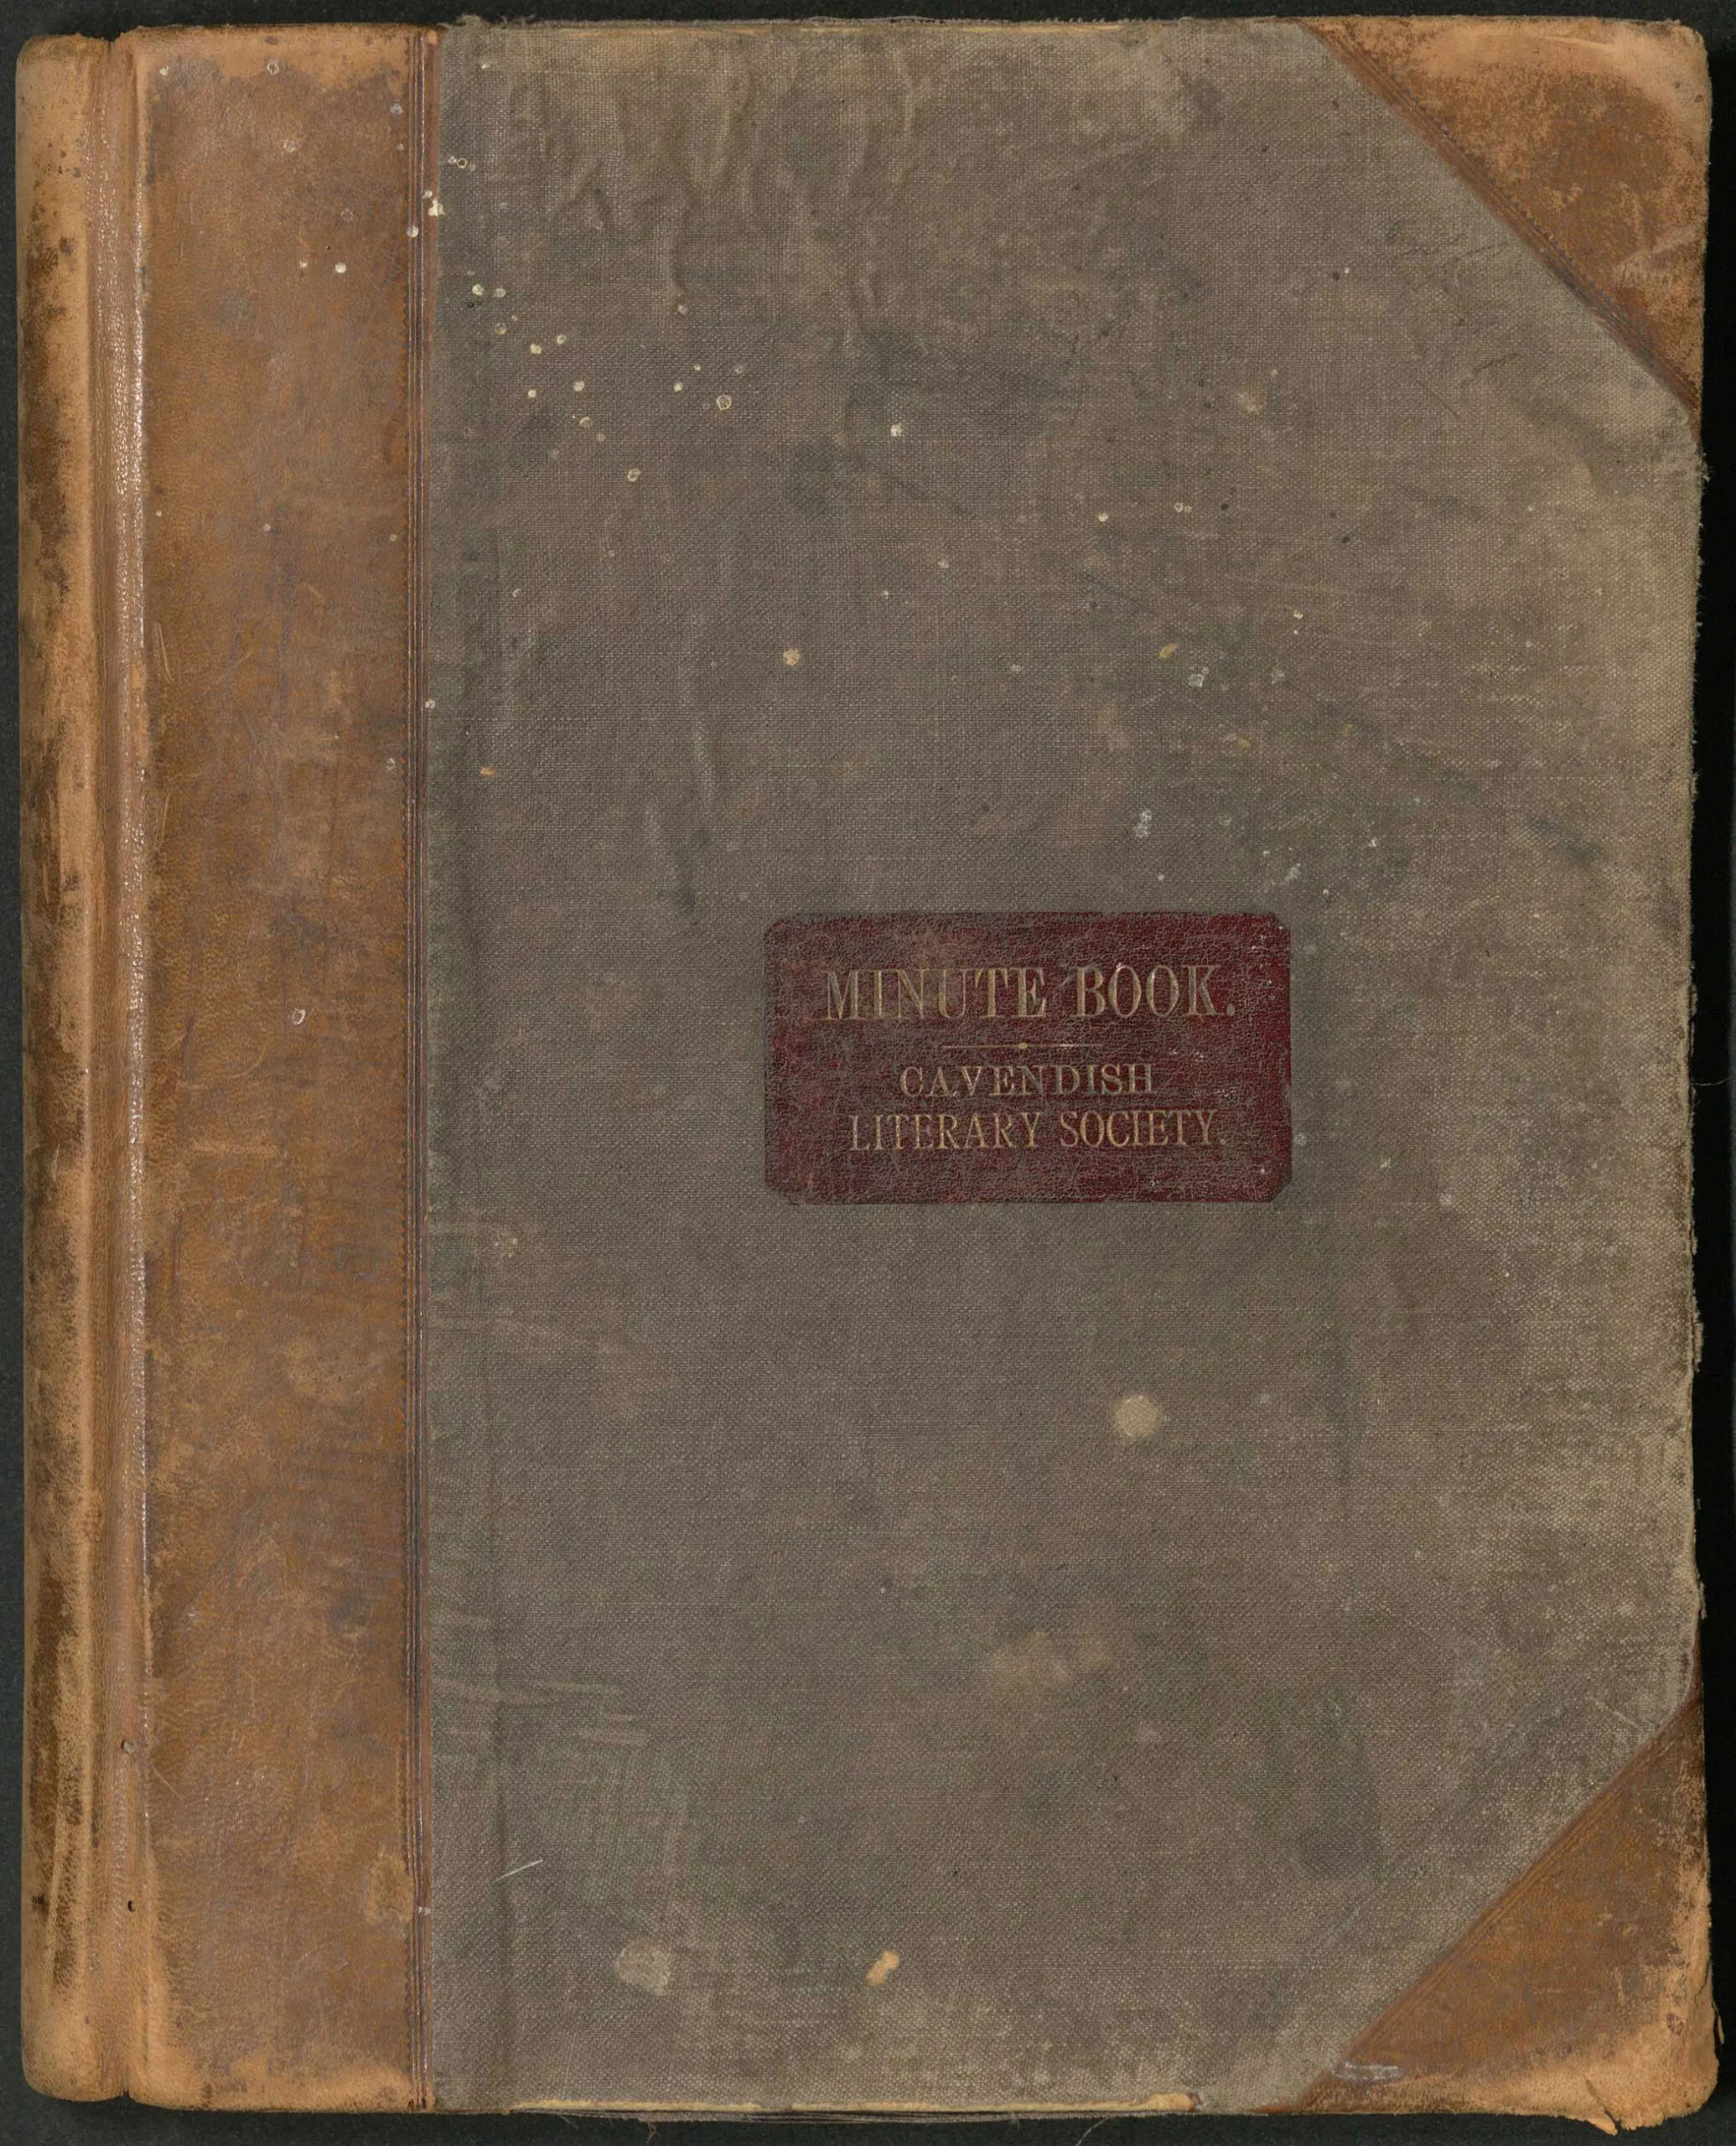 Couverture usée du registre des procès-verbaux de la Cavendish Literary Society